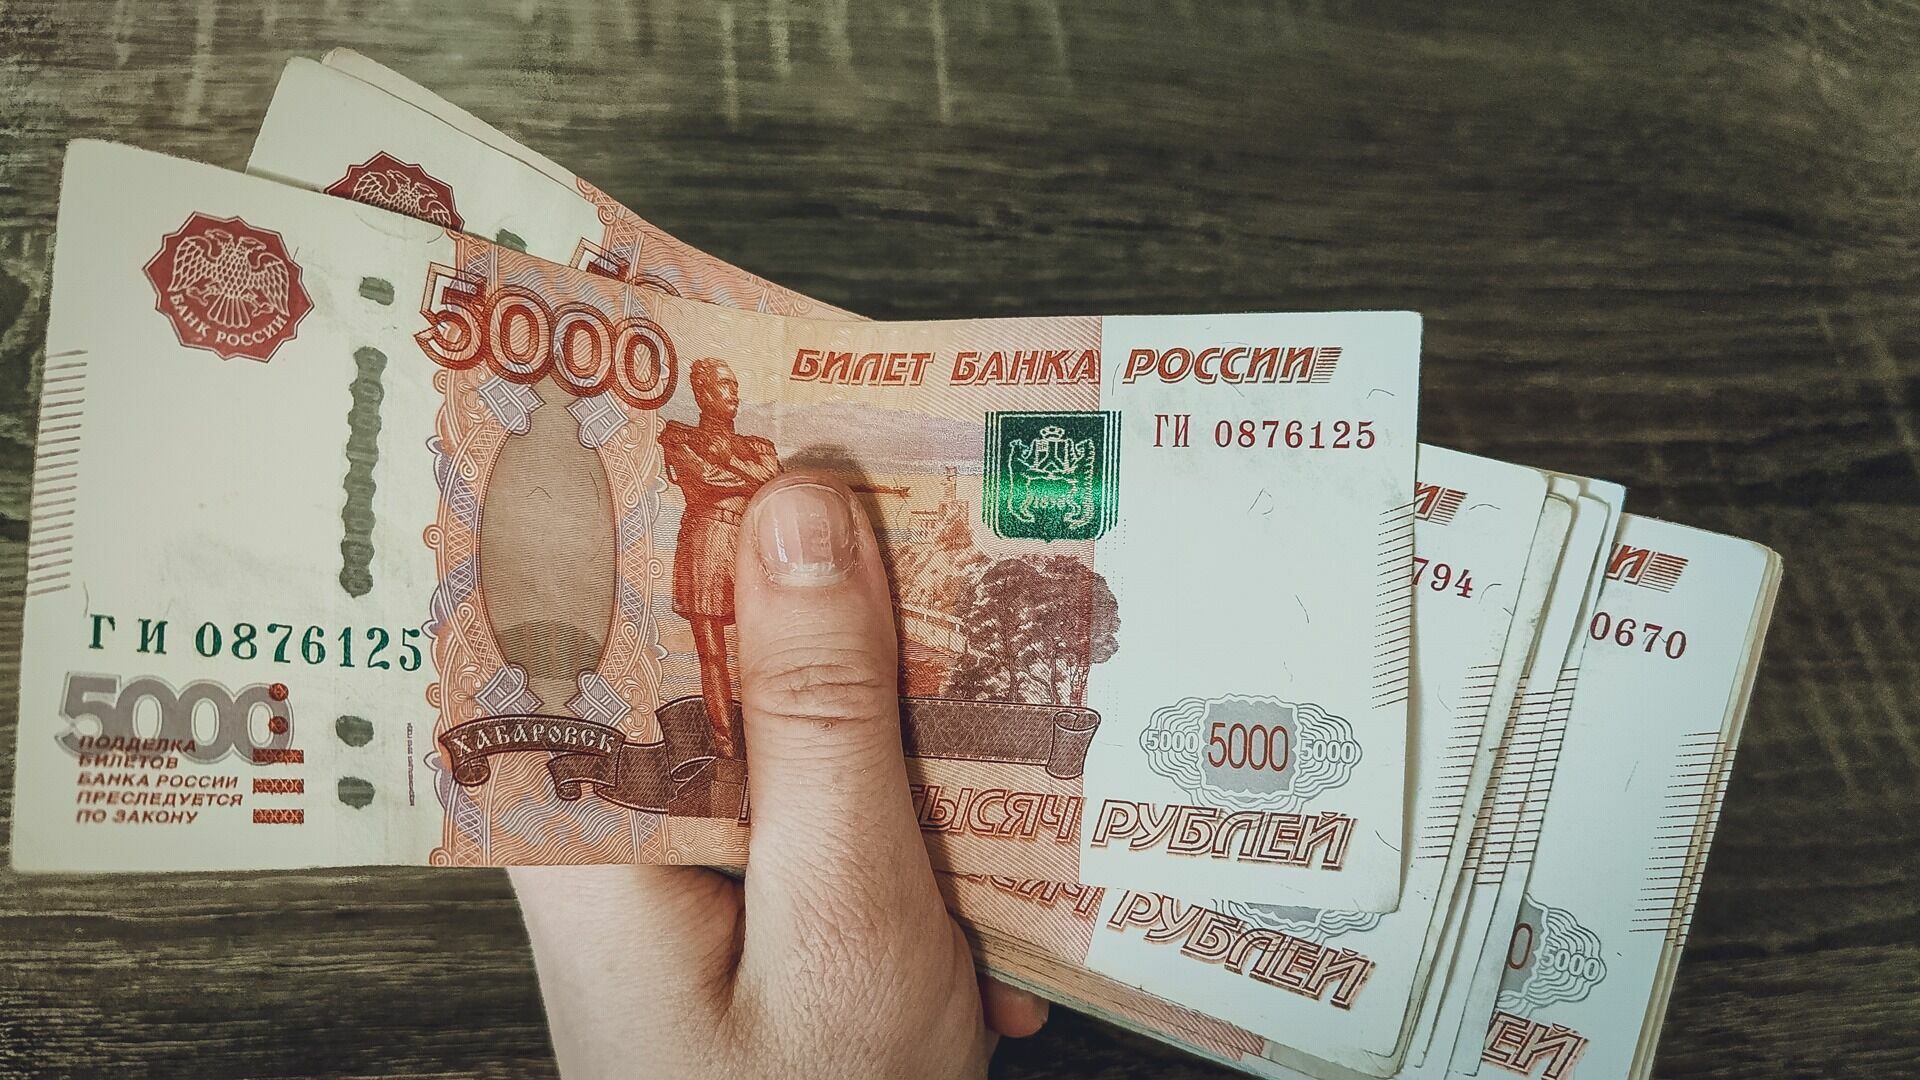 Юрист обманул жителя Екатеринбурга на 46 тысяч рублей